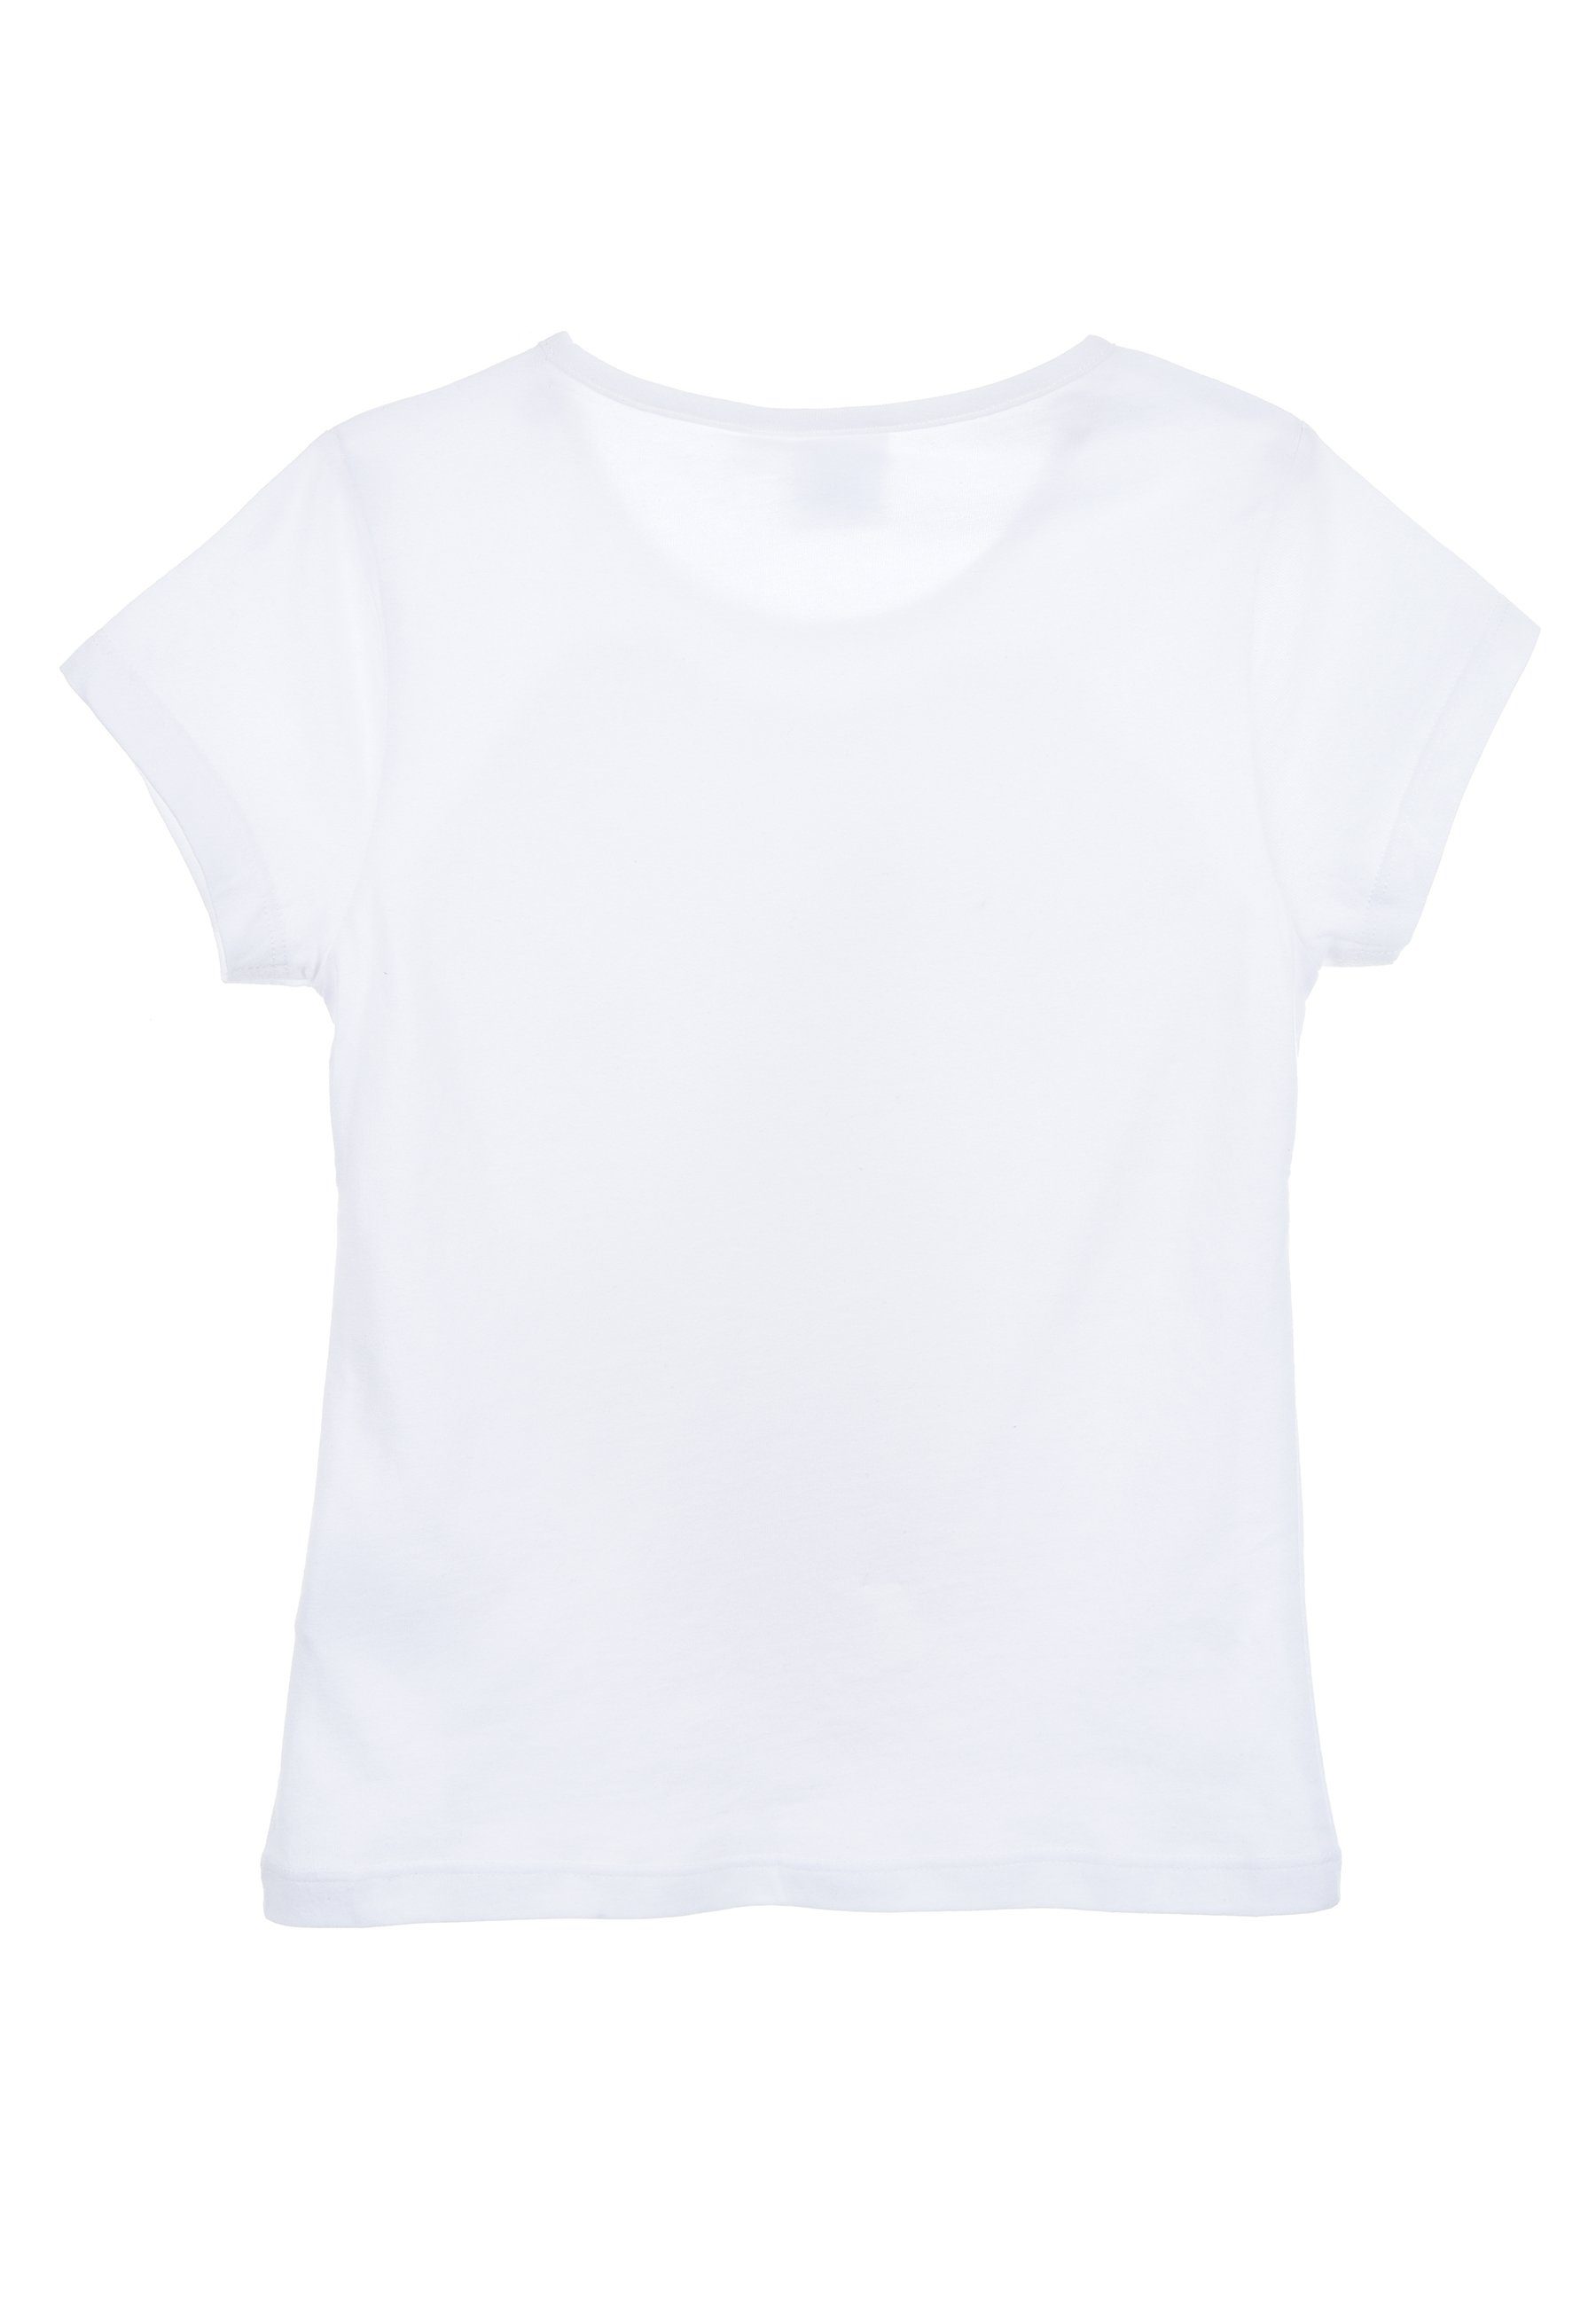 - Eiskönigin T-Shirt Die Frozen Frozen T-Shirt Weiß Mädchen Sommer Disney Shirt